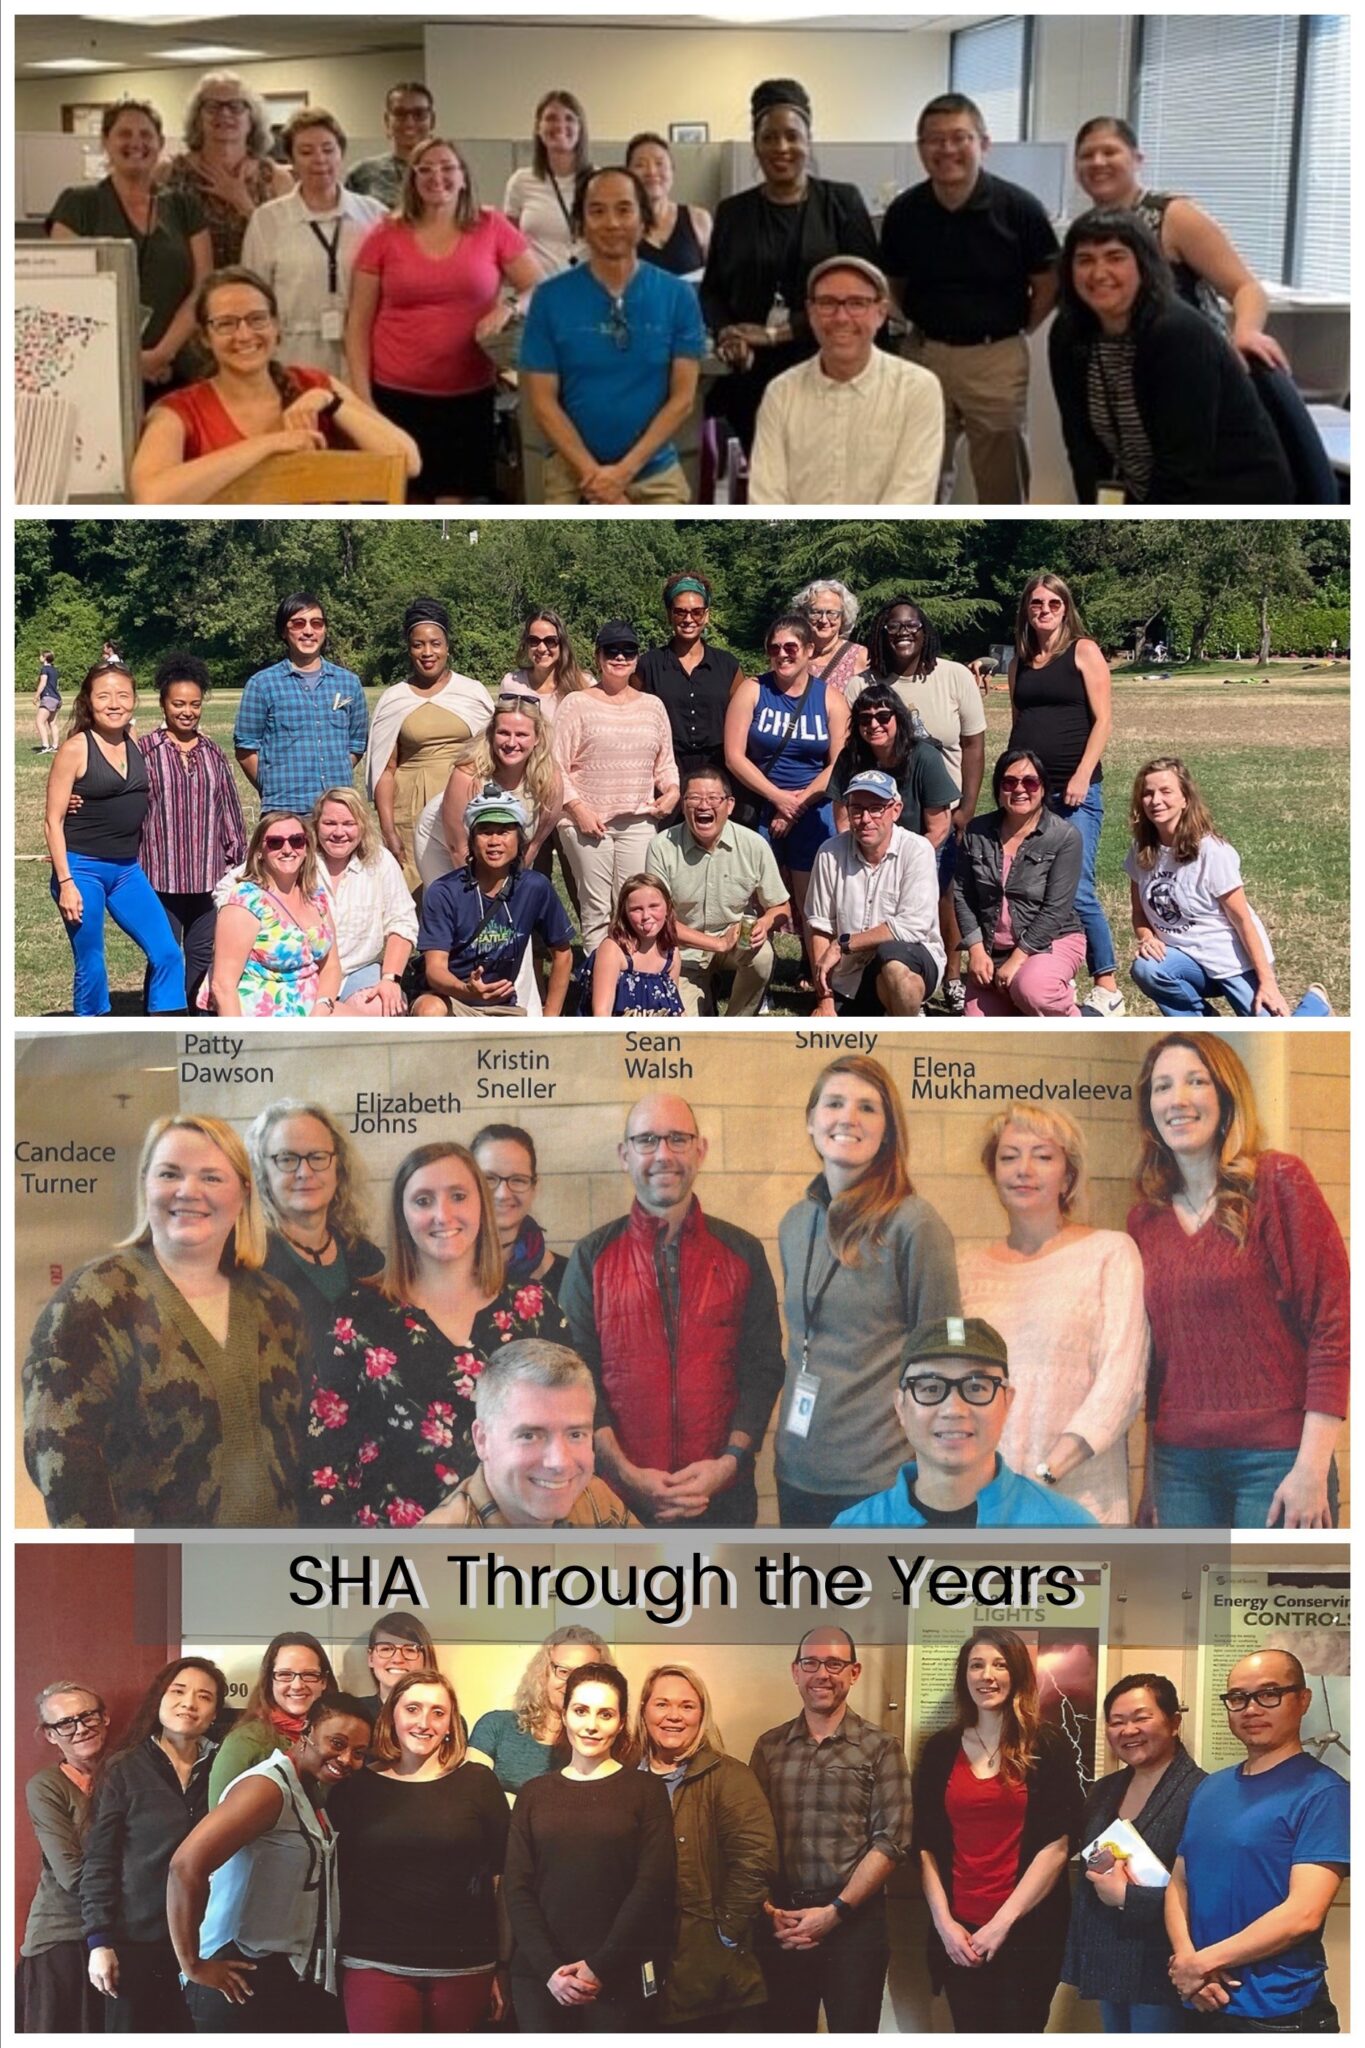 SHA team photos over multiple years